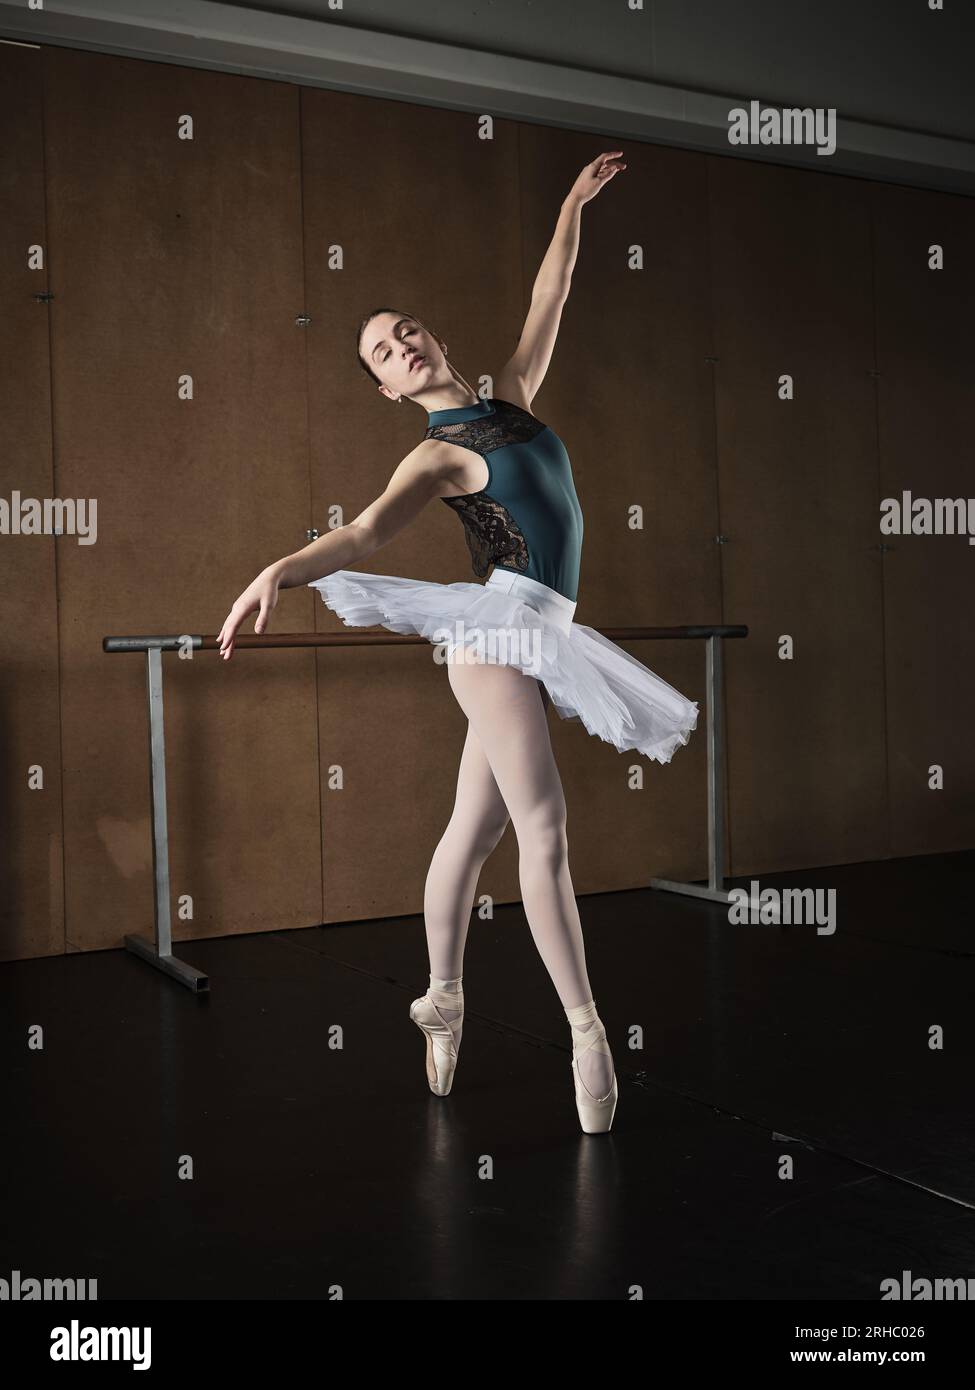 Corps entier de vue latérale gracieuse ballerine en tutu blanc debout avec  les mains levées sur les orteils dans les chaussures de pointe pendant la  répétition en studio Photo Stock - Alamy